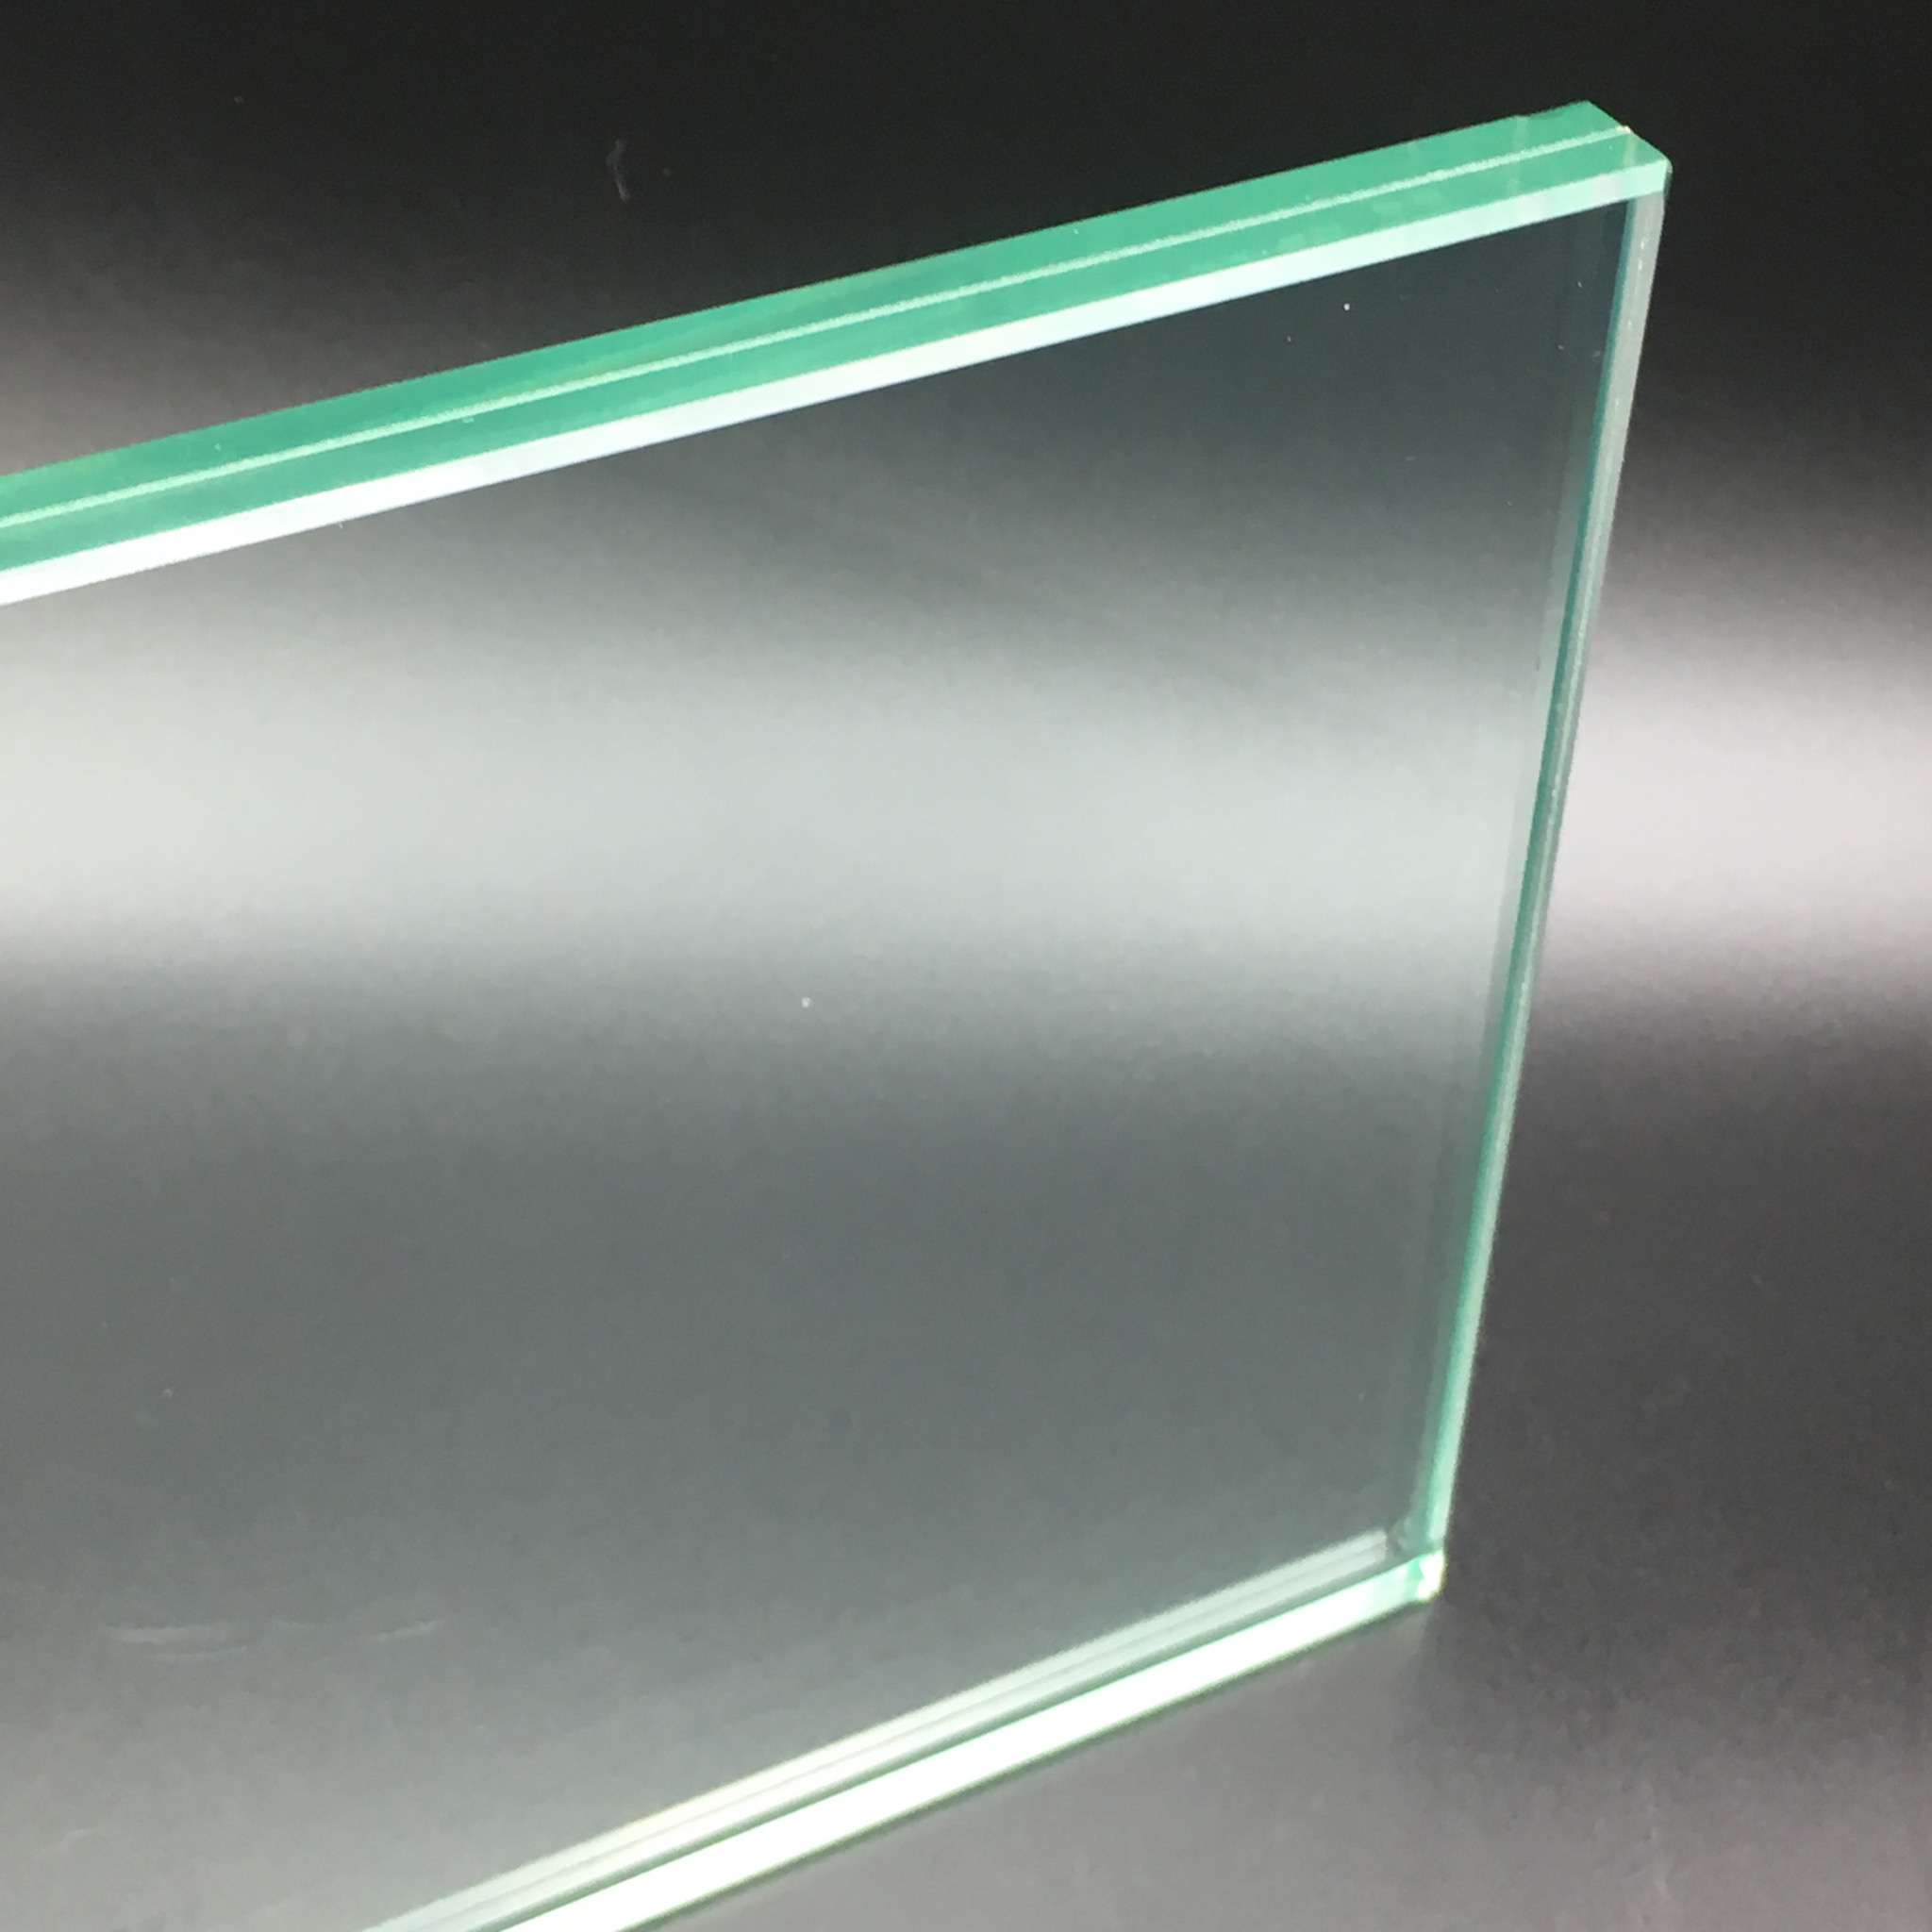 7 x 10 pouces ovale plaque de verre plié transparent 1/8 dépaisseur plaque  de verre ovale pour le découpage, fournitures en verre ovale, personnaliser  les fournitures en verre ovale -  France